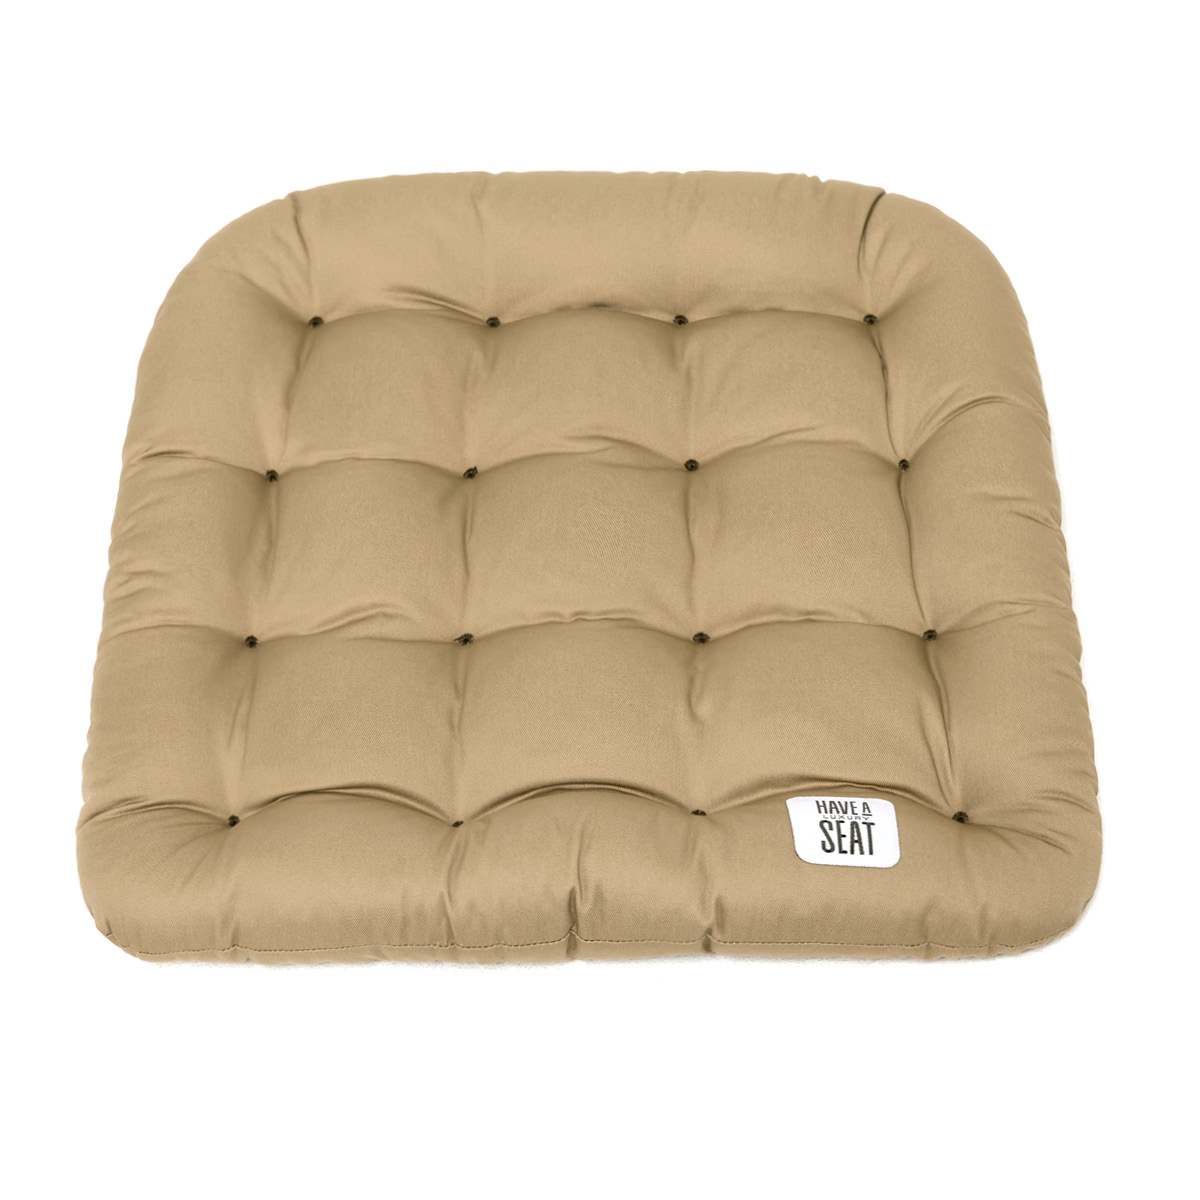 Gepolstertes Stuhlkissen / Matratzenkissen 48x46 cm mit Thermo-Komfortpolsterung, Baumwoll-Mischgewebe beige / taupe | HAVE A SEAT Living